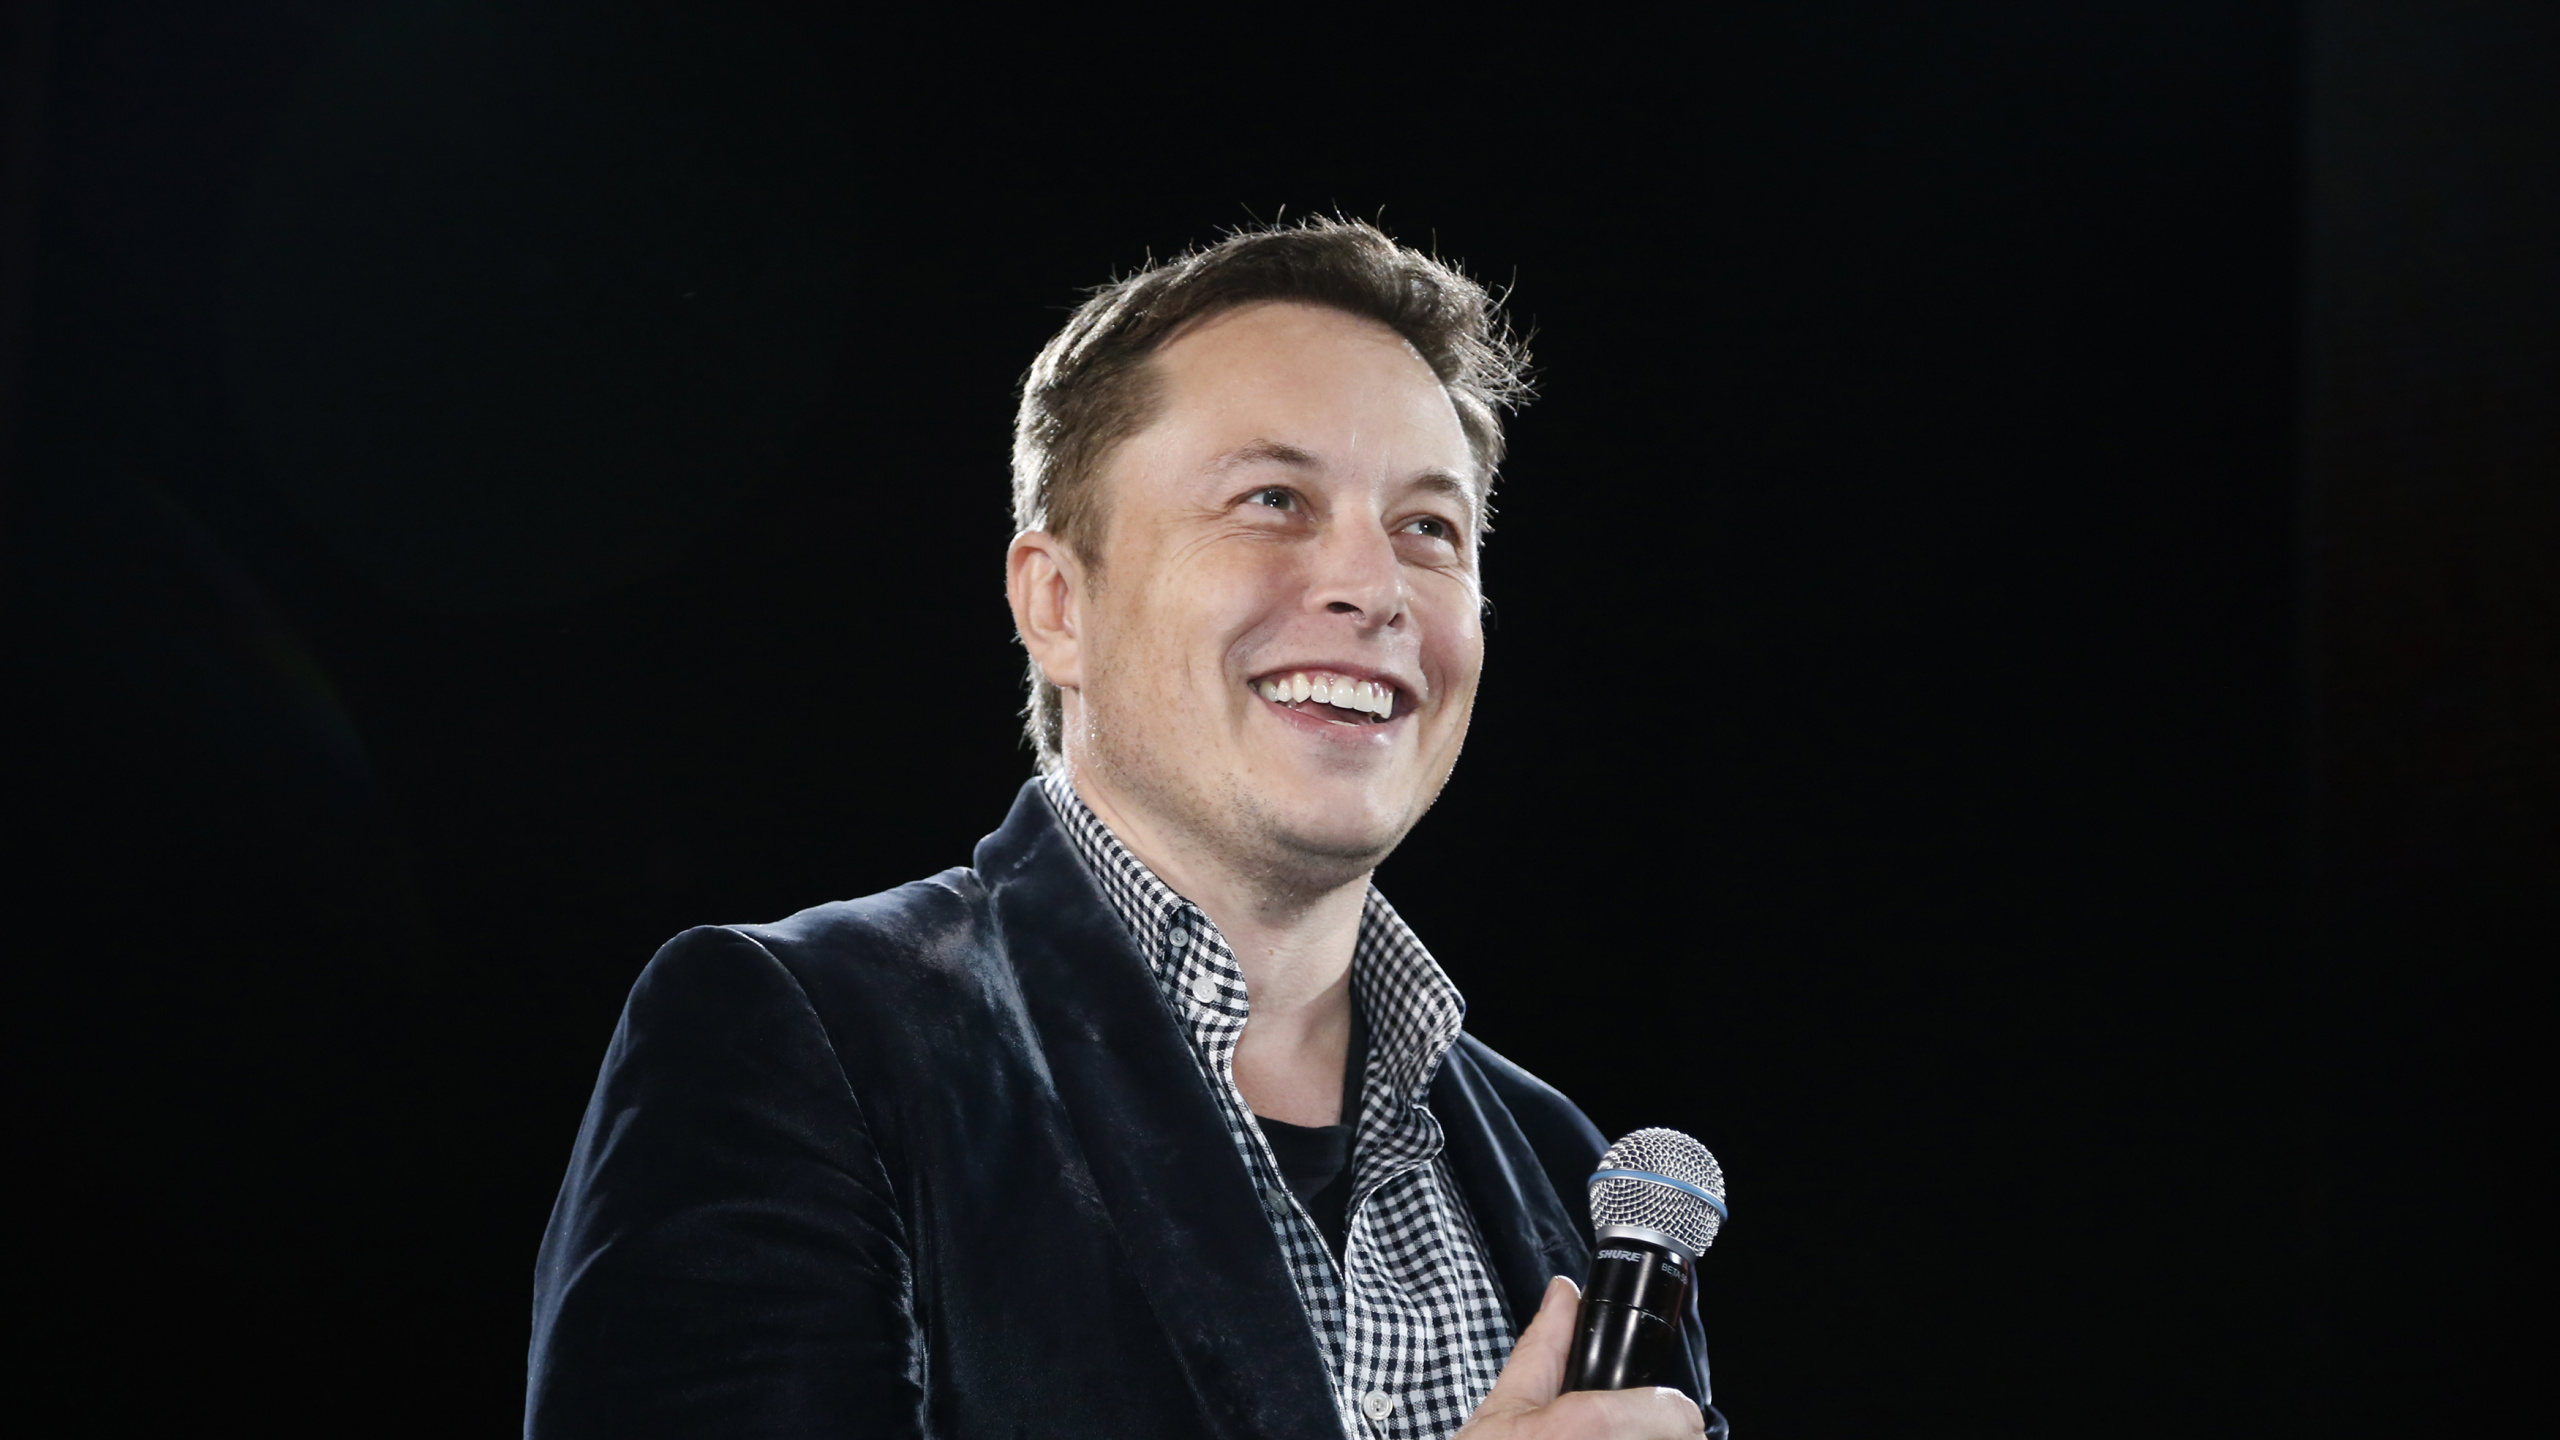 Elon Musk, Micrófono, Discurso, Hablar en Público, el Artista de Música. Wallpaper in 2560x1440 Resolution